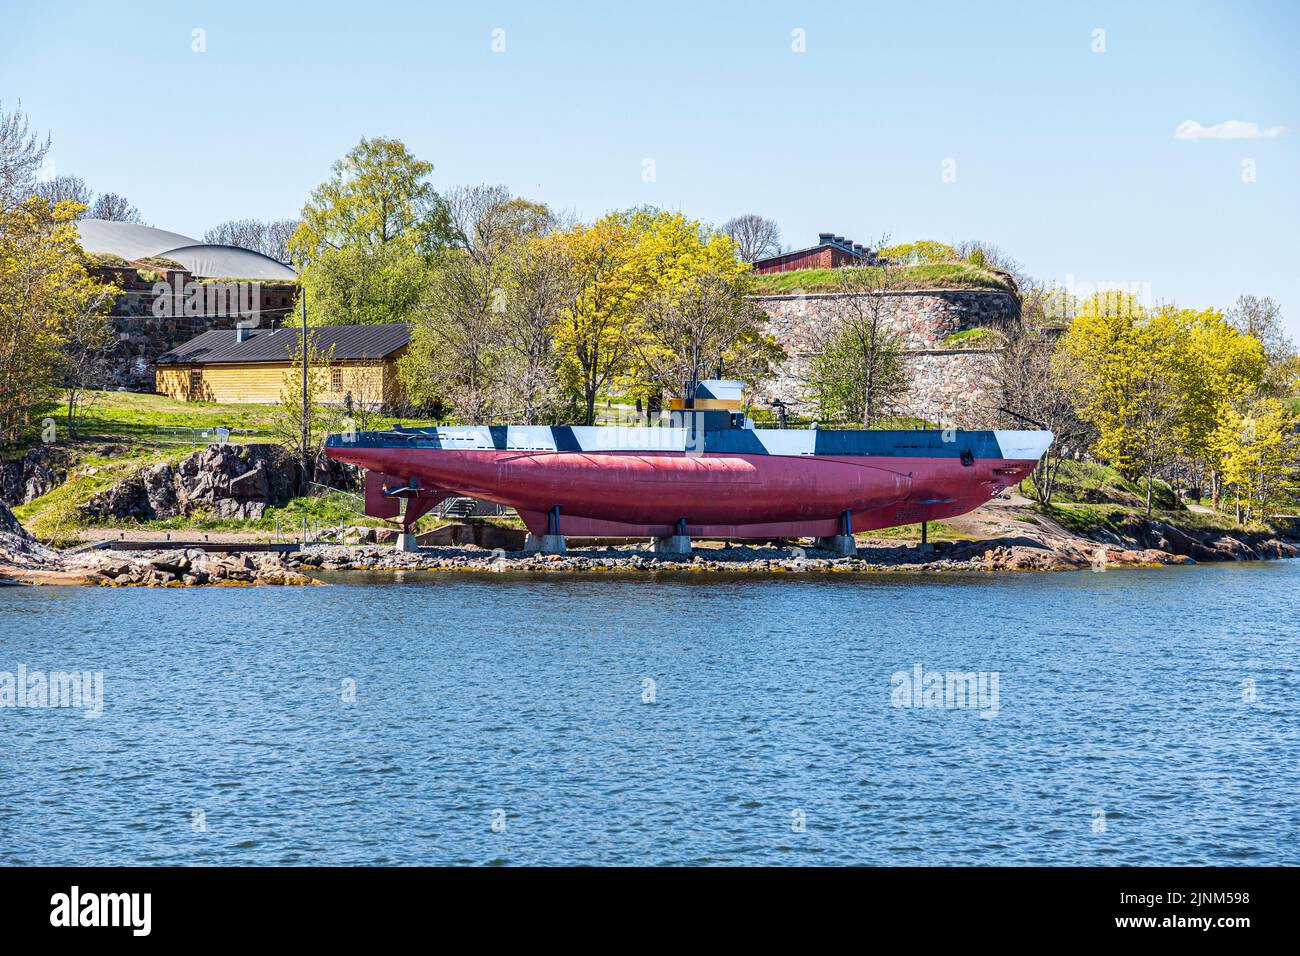 El submarino finlandés Vesikko fue lanzado en 1933, ahora un museo en la isla de Suomenlinna, cerca de Helsinki, Finlandia Foto de stock